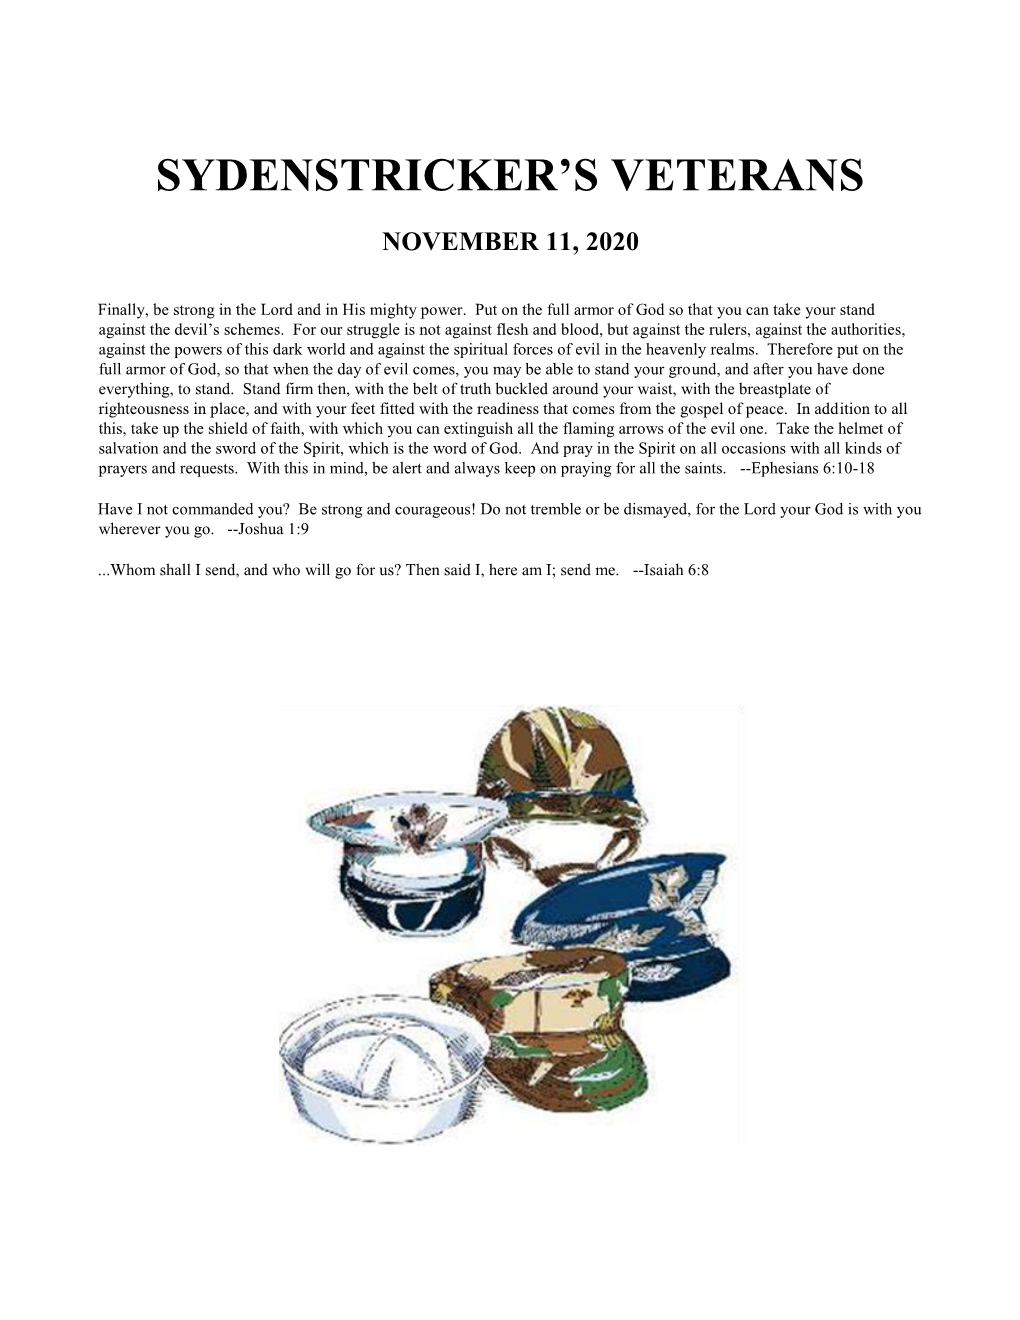 Sydenstricker's Veterans